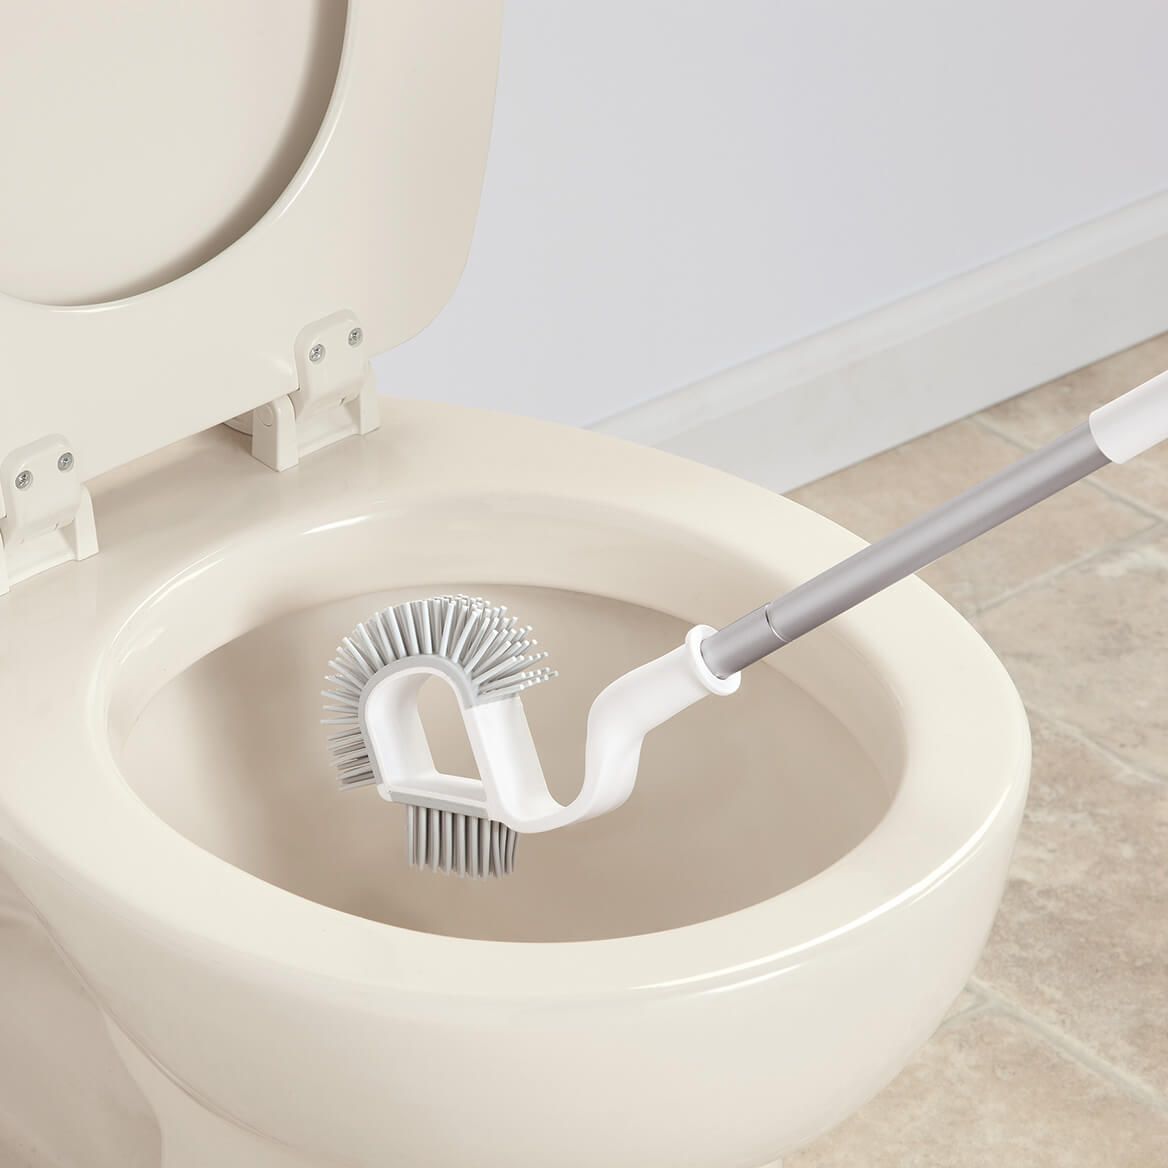 Under Rim Toilet Bowl Brush by LivingSURE™ + '-' + 376828